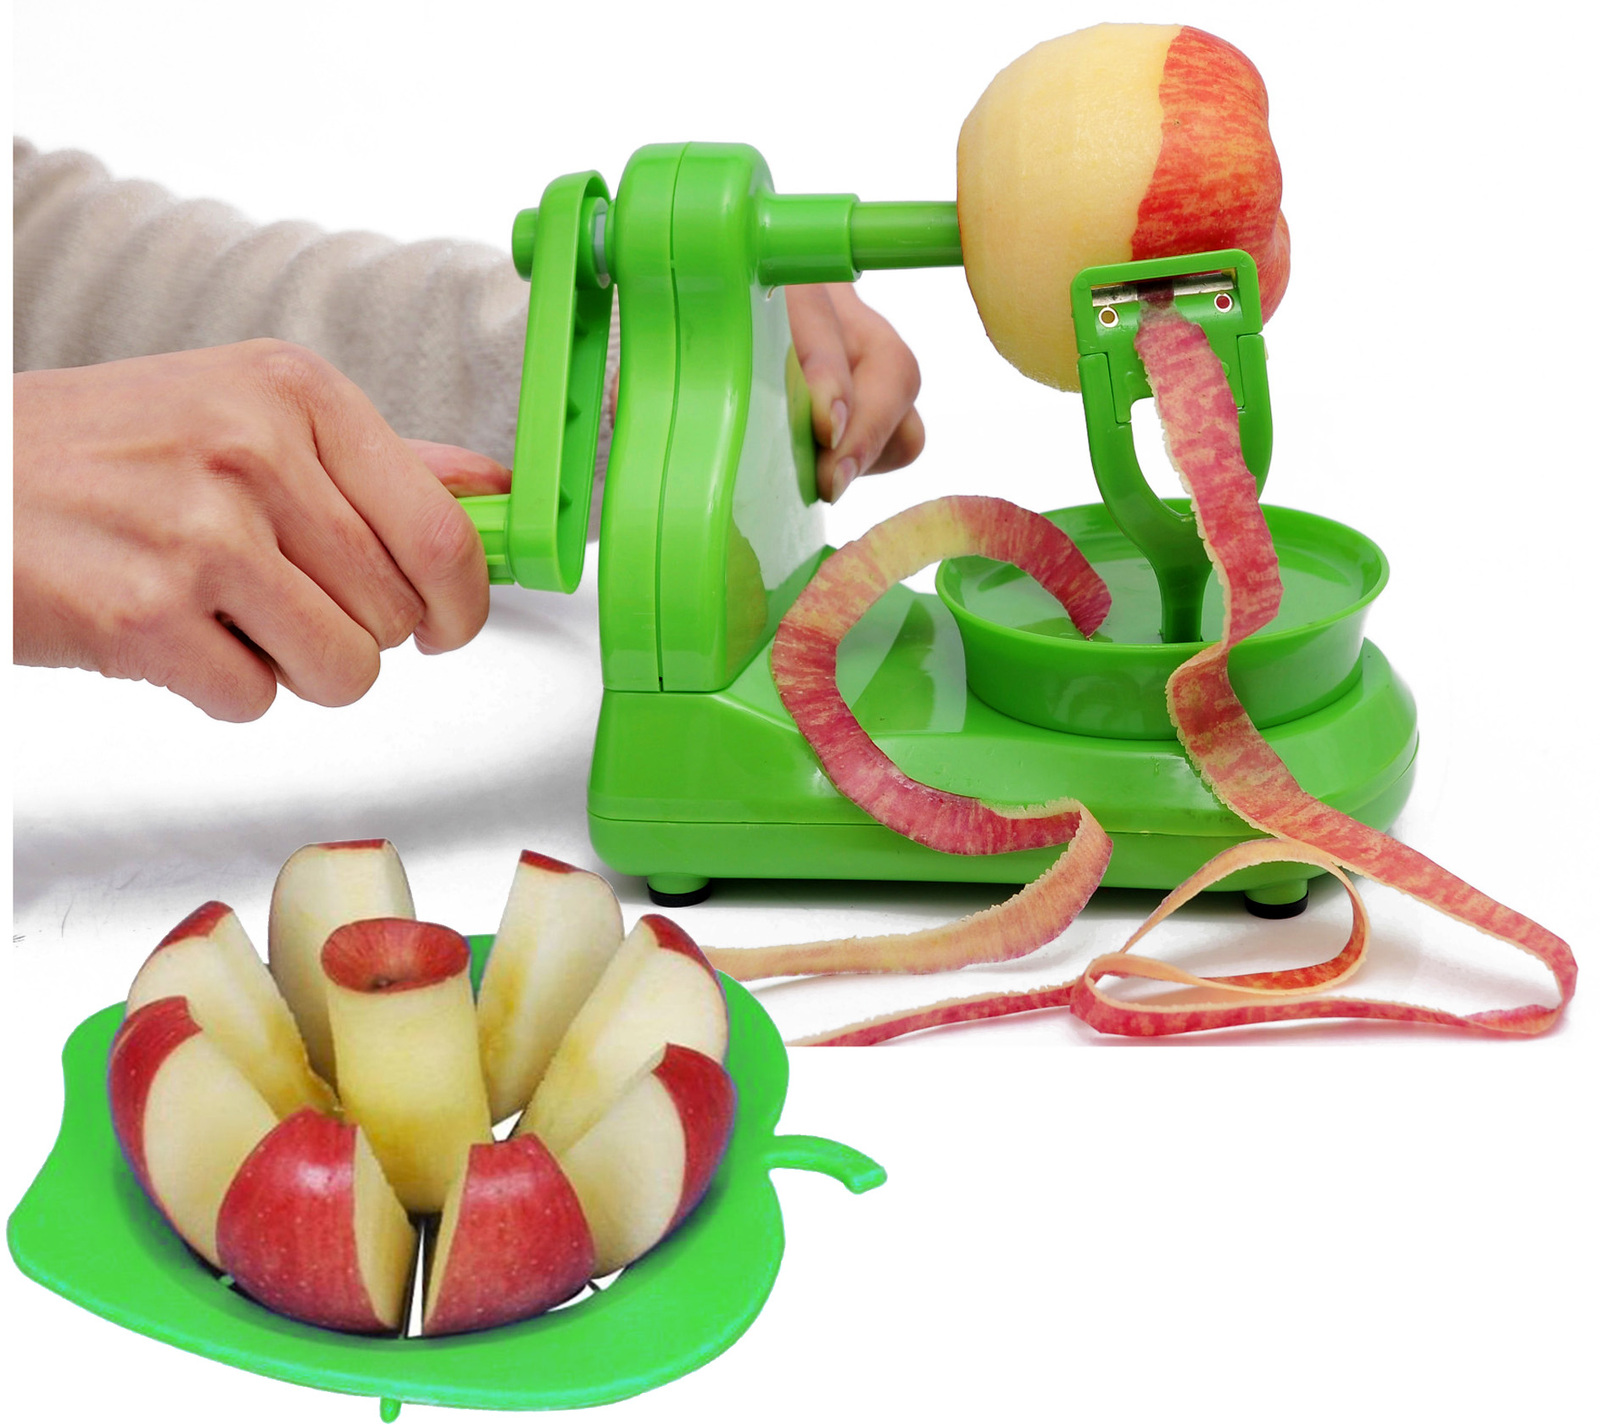 2 Combo Pack: Apple Peeler Fruit Peeling Machine & Apple Corer/Slicer